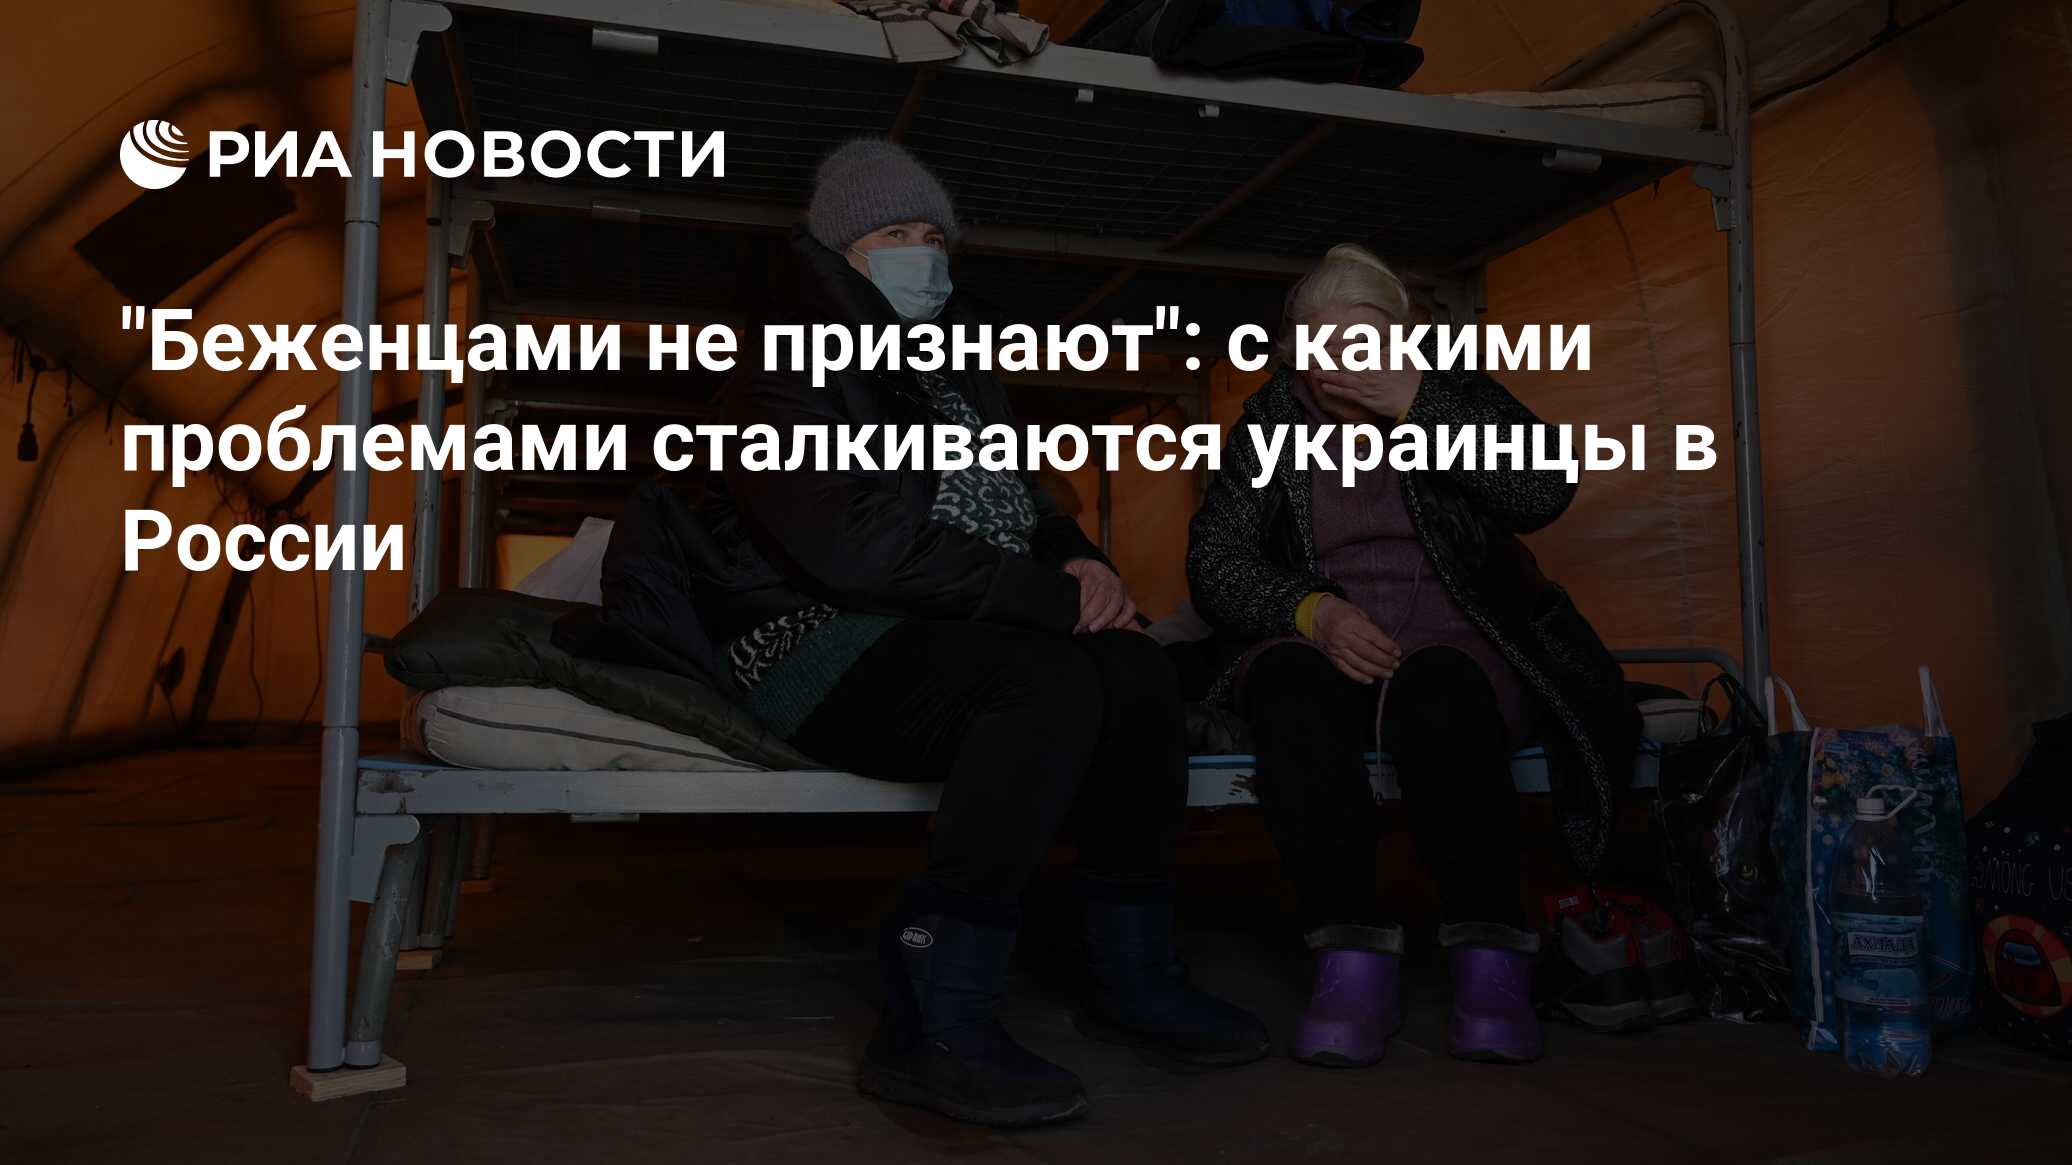 Беженцами не признают": с какими проблемами сталкиваются украинцы в России  - РИА Новости, 04.05.2022